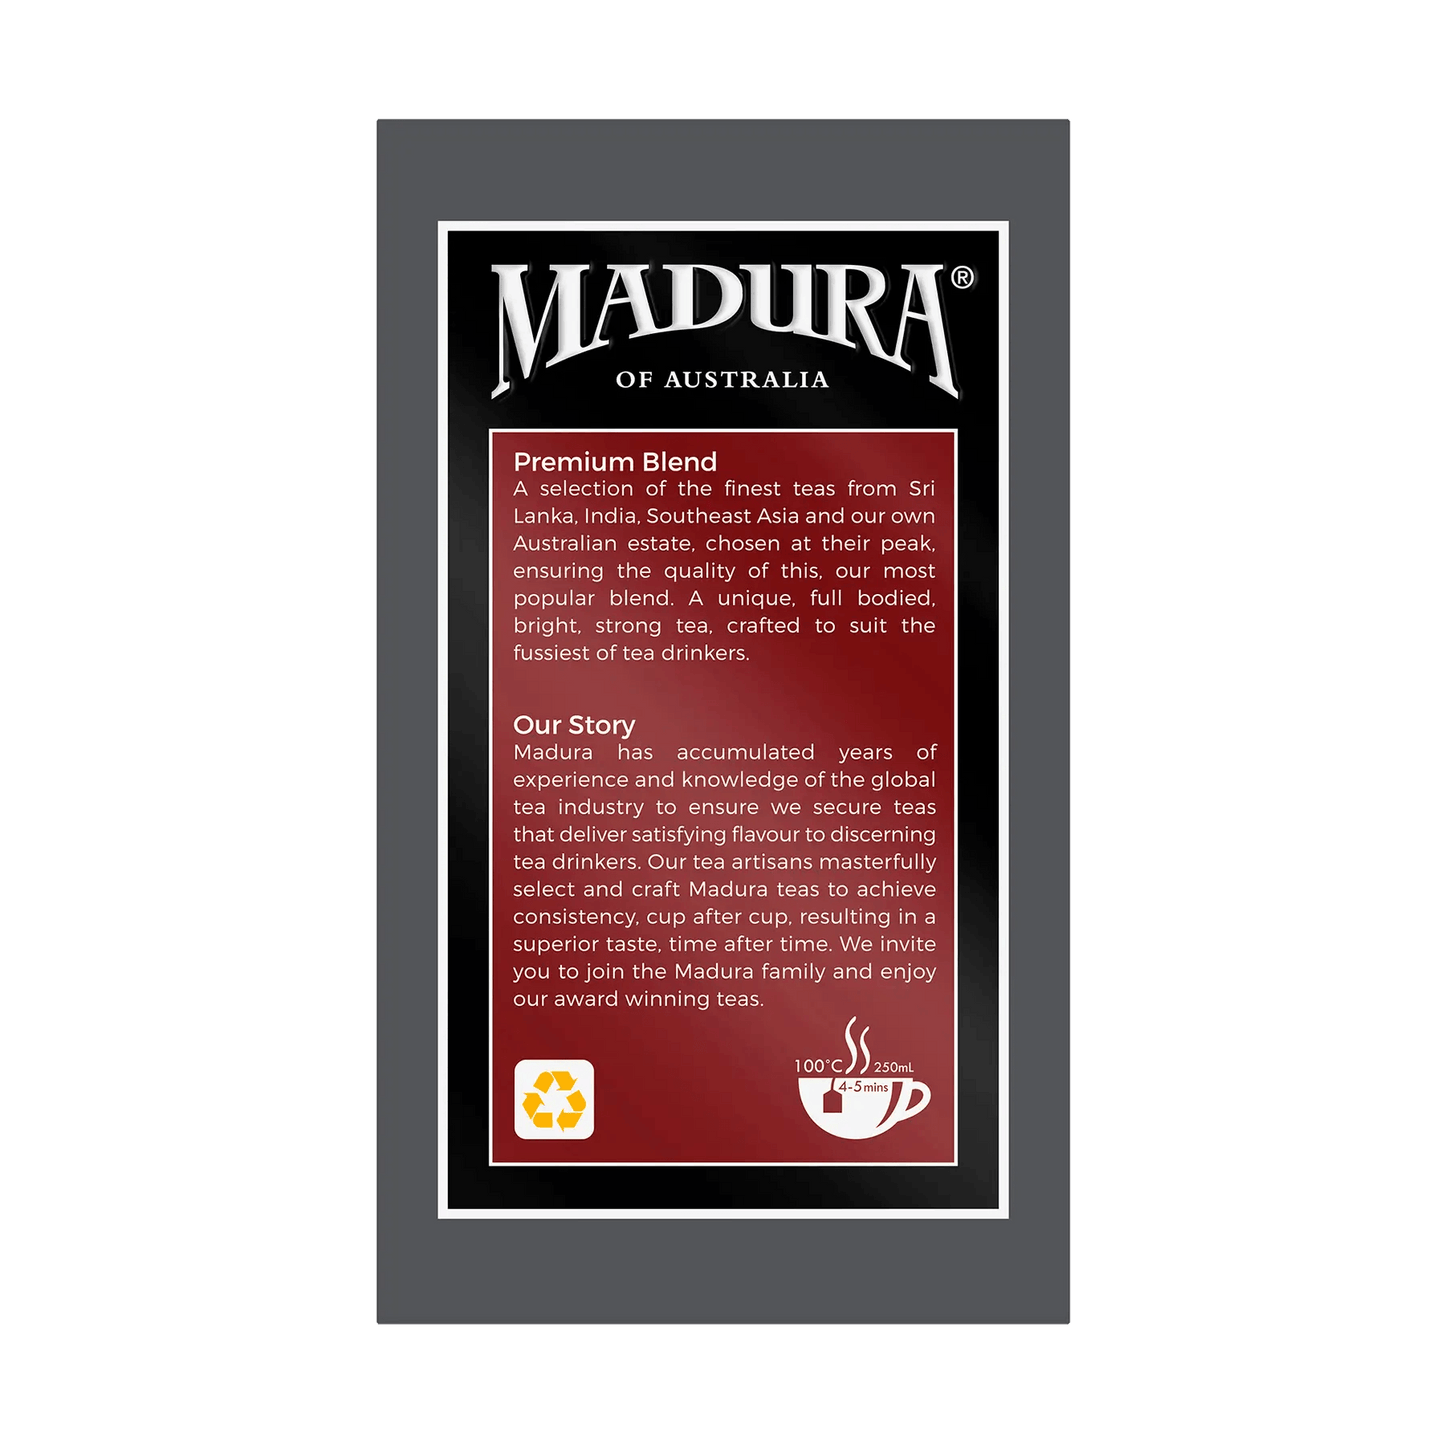 Premium Blend 80 Enveloped Tea Bags - Madura Tea Estates